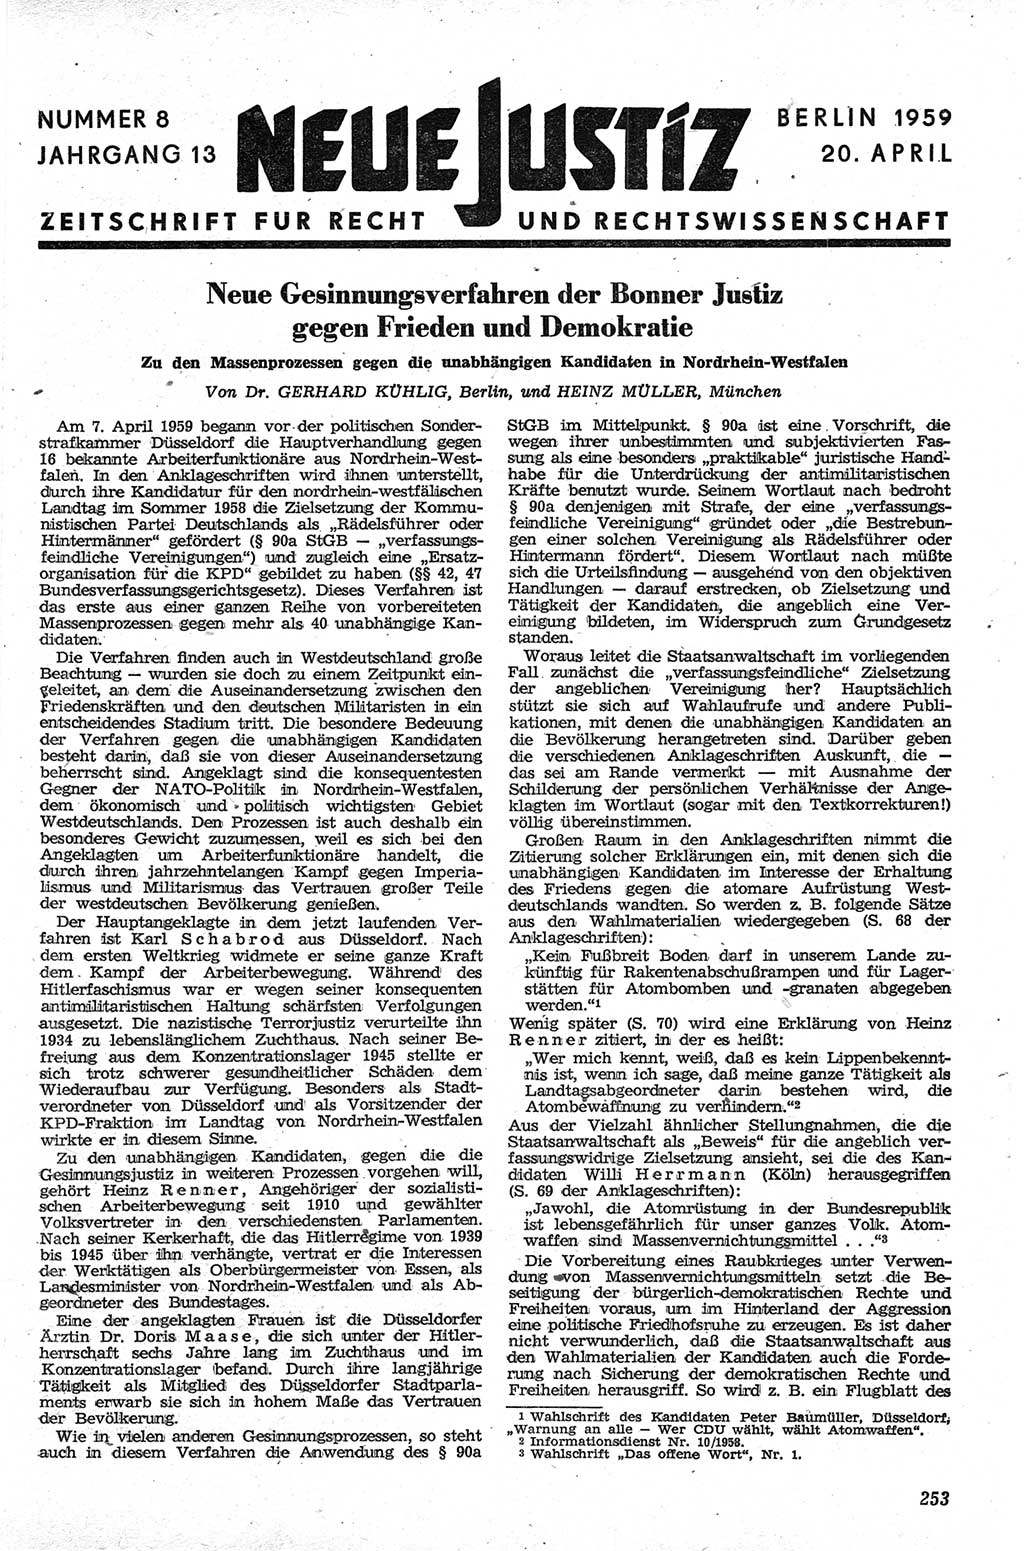 Neue Justiz (NJ), Zeitschrift für Recht und Rechtswissenschaft [Deutsche Demokratische Republik (DDR)], 13. Jahrgang 1959, Seite 253 (NJ DDR 1959, S. 253)